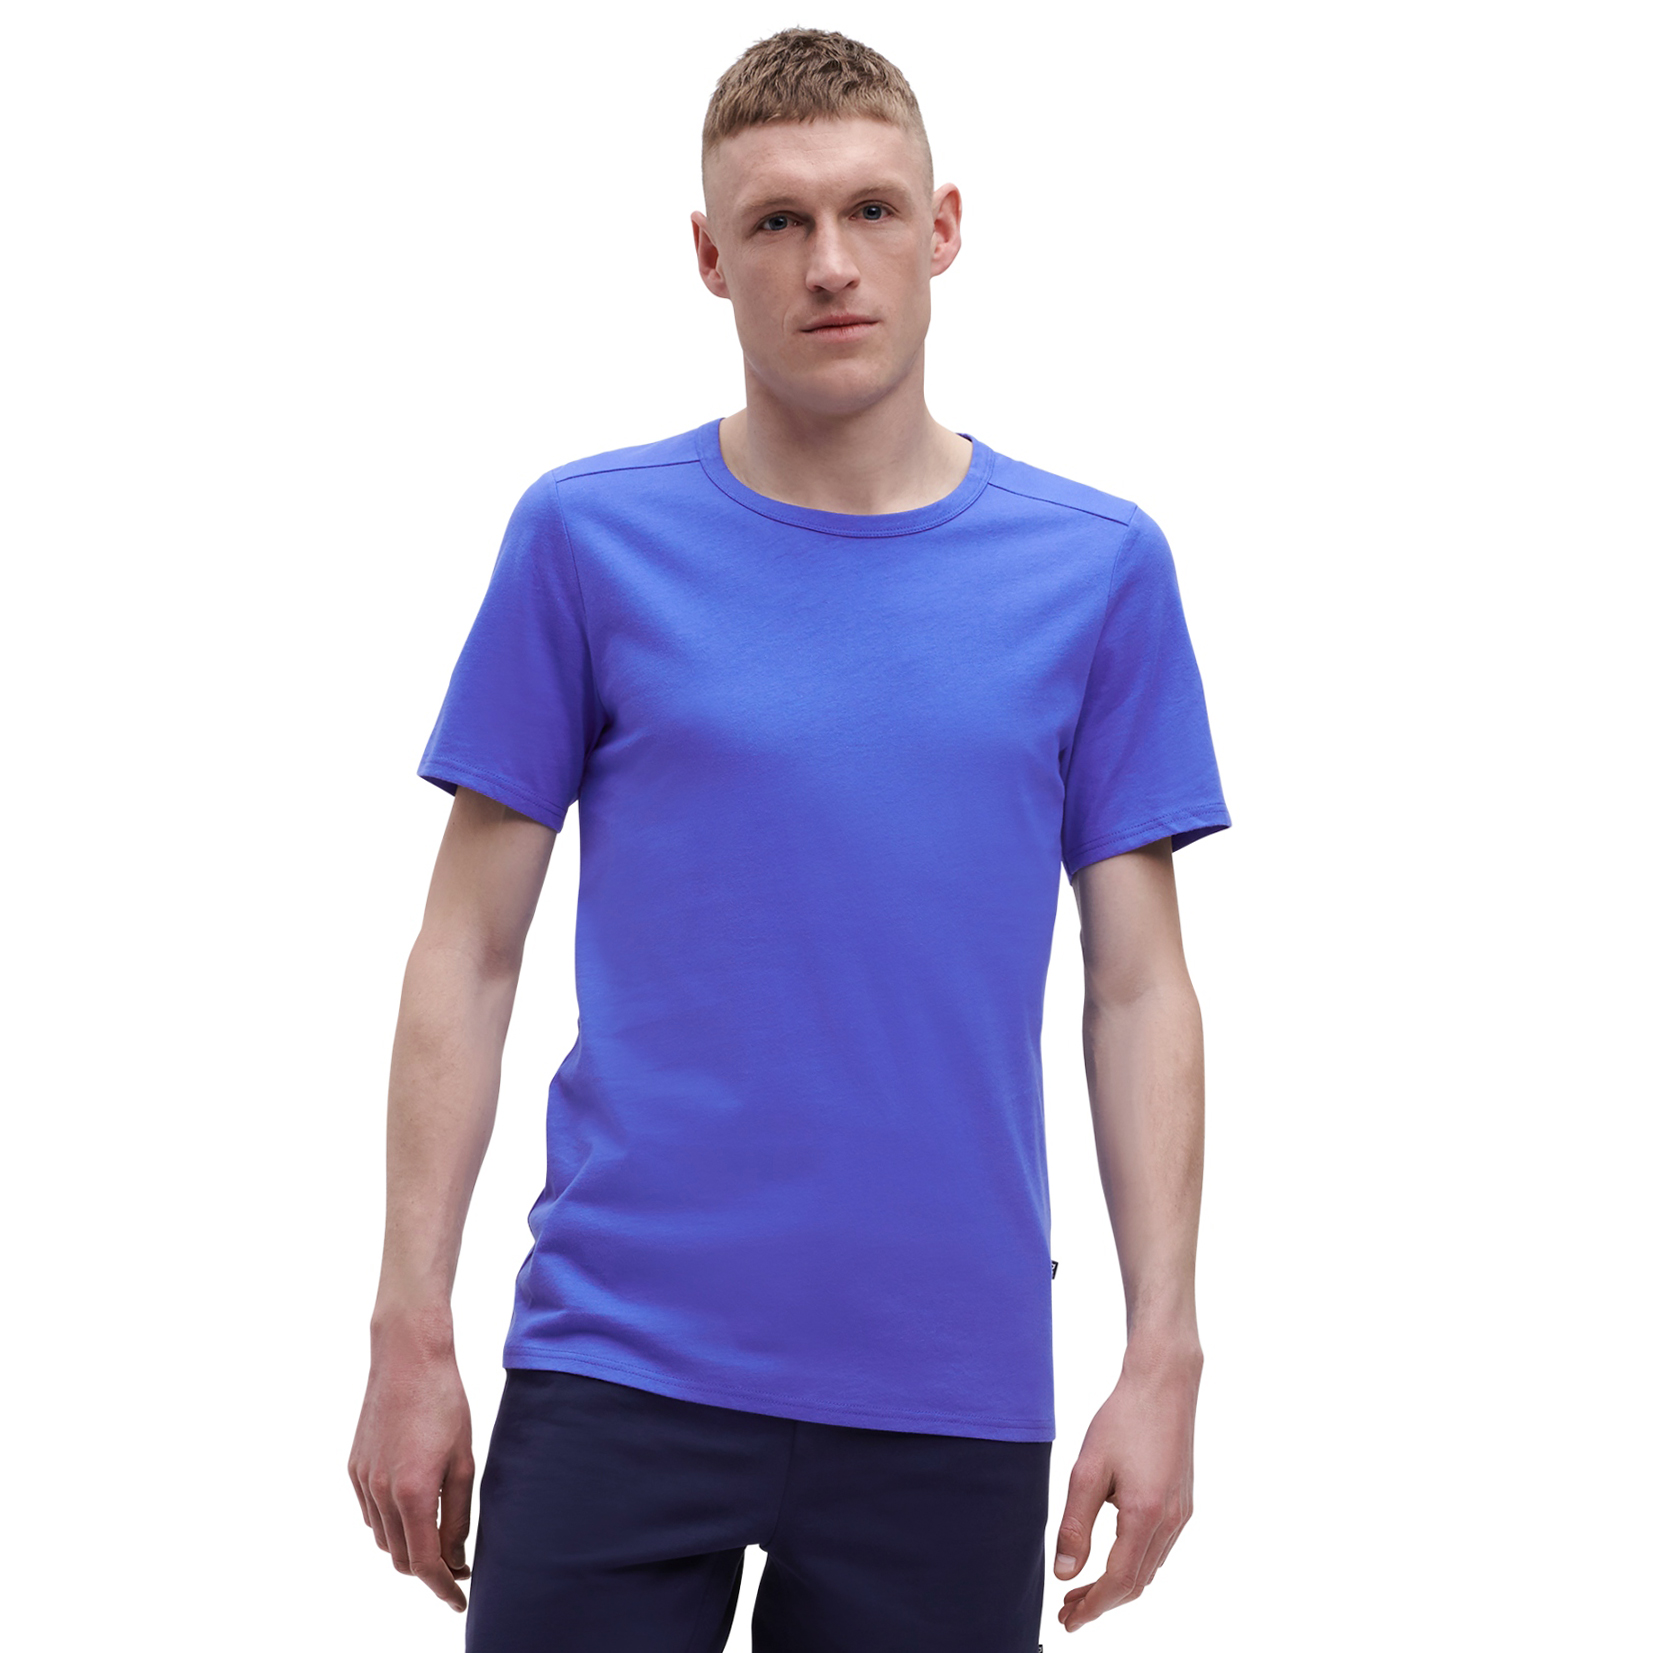 Produktbild von On T Shirt - Cobalt